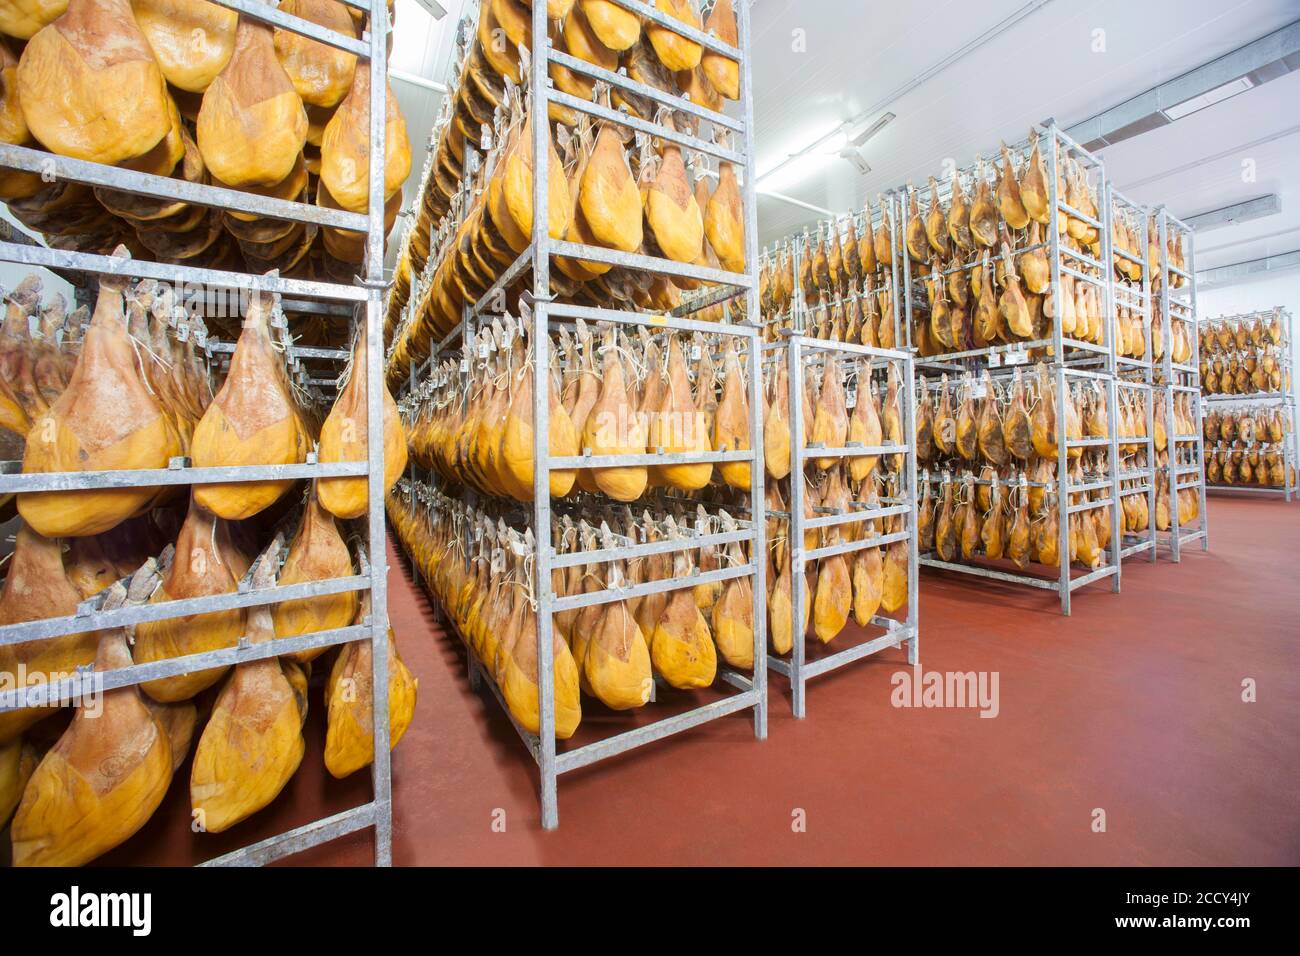 Salle de stockage avec jambon cru, usine de Cantimpalos, province de Segovia, Espagne Banque D'Images